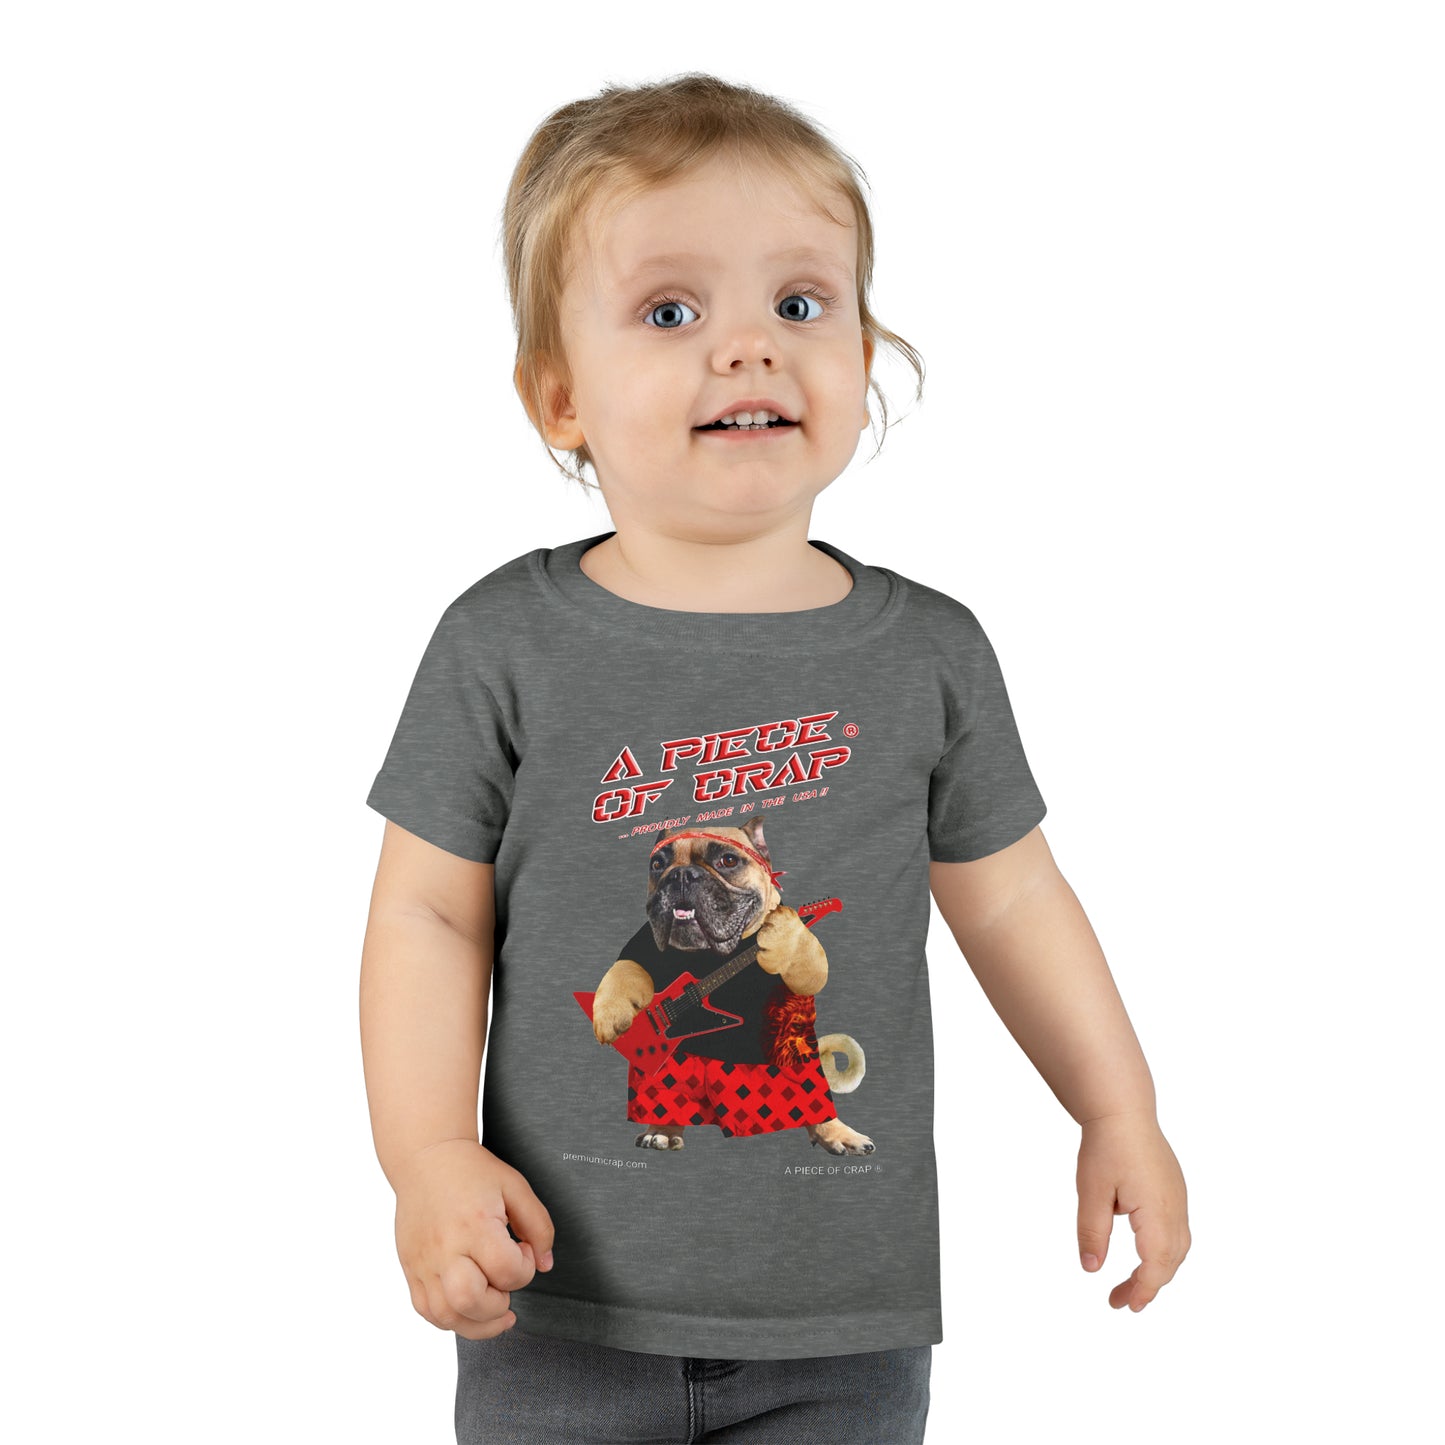 A Piece Of Crap II Toddler T-shirt